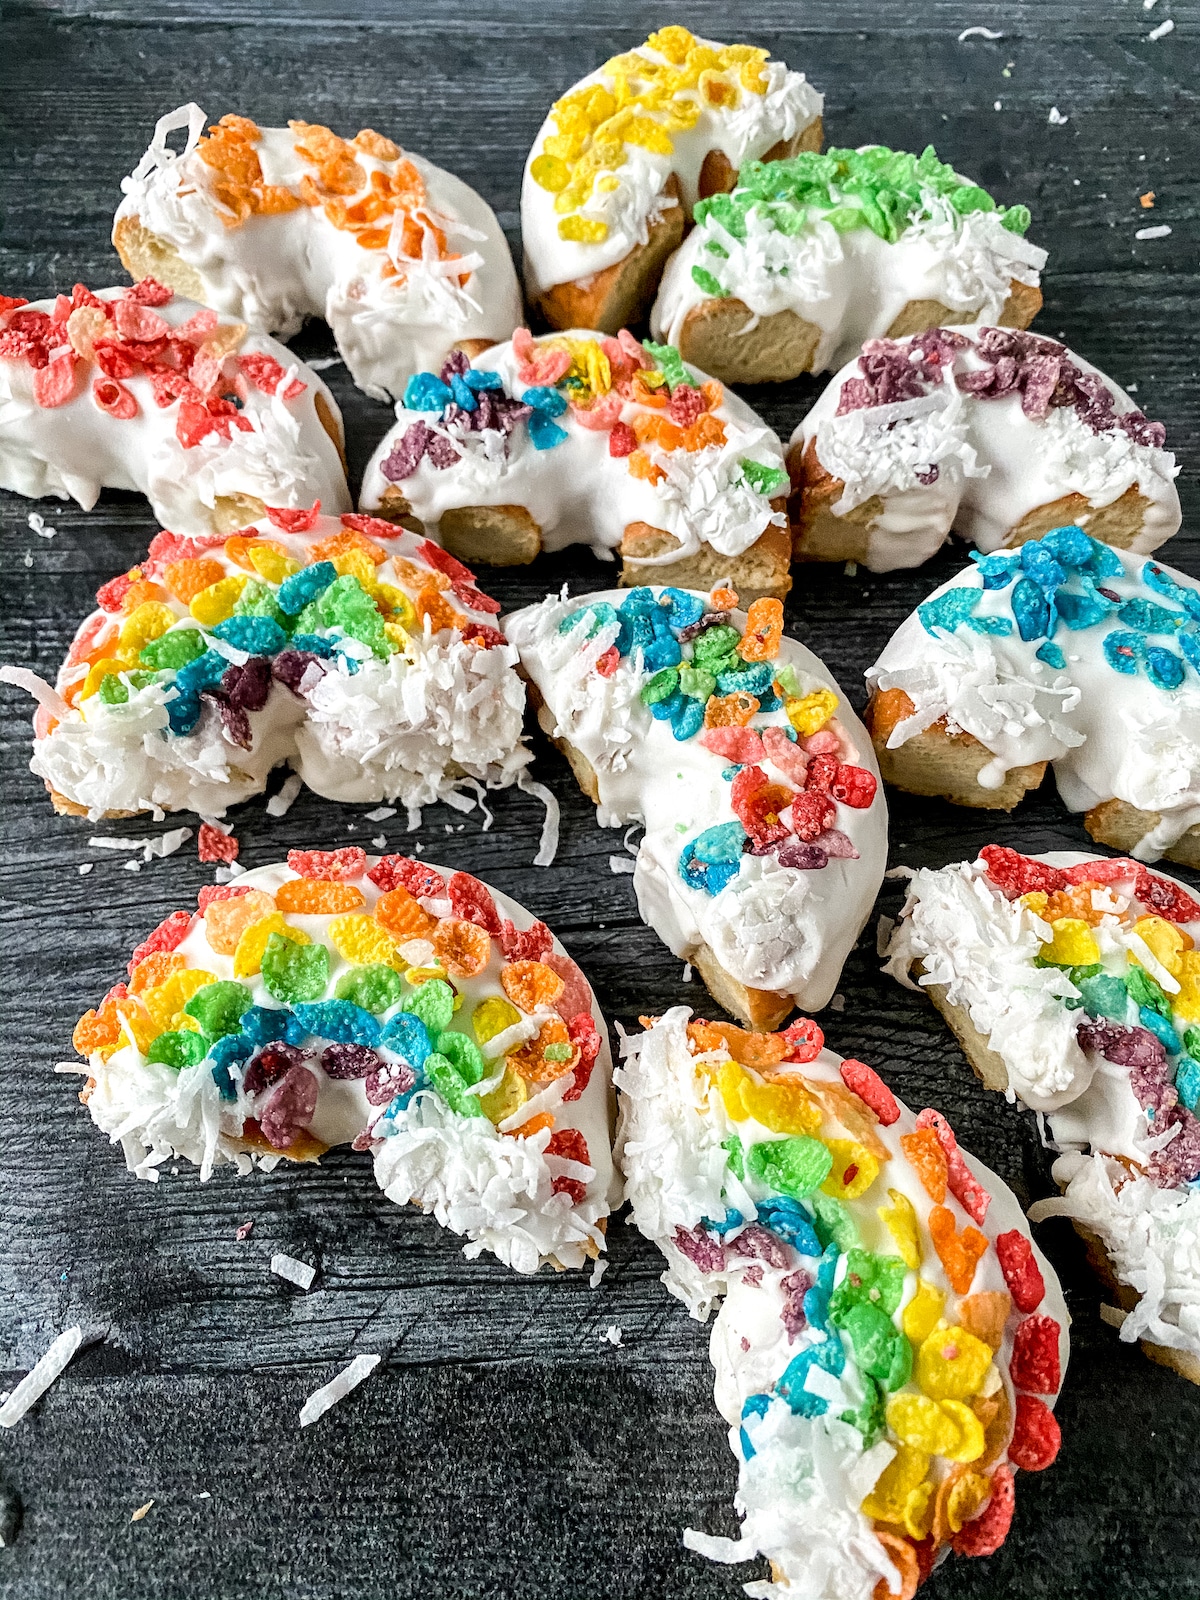 Rainbow donuts on black table